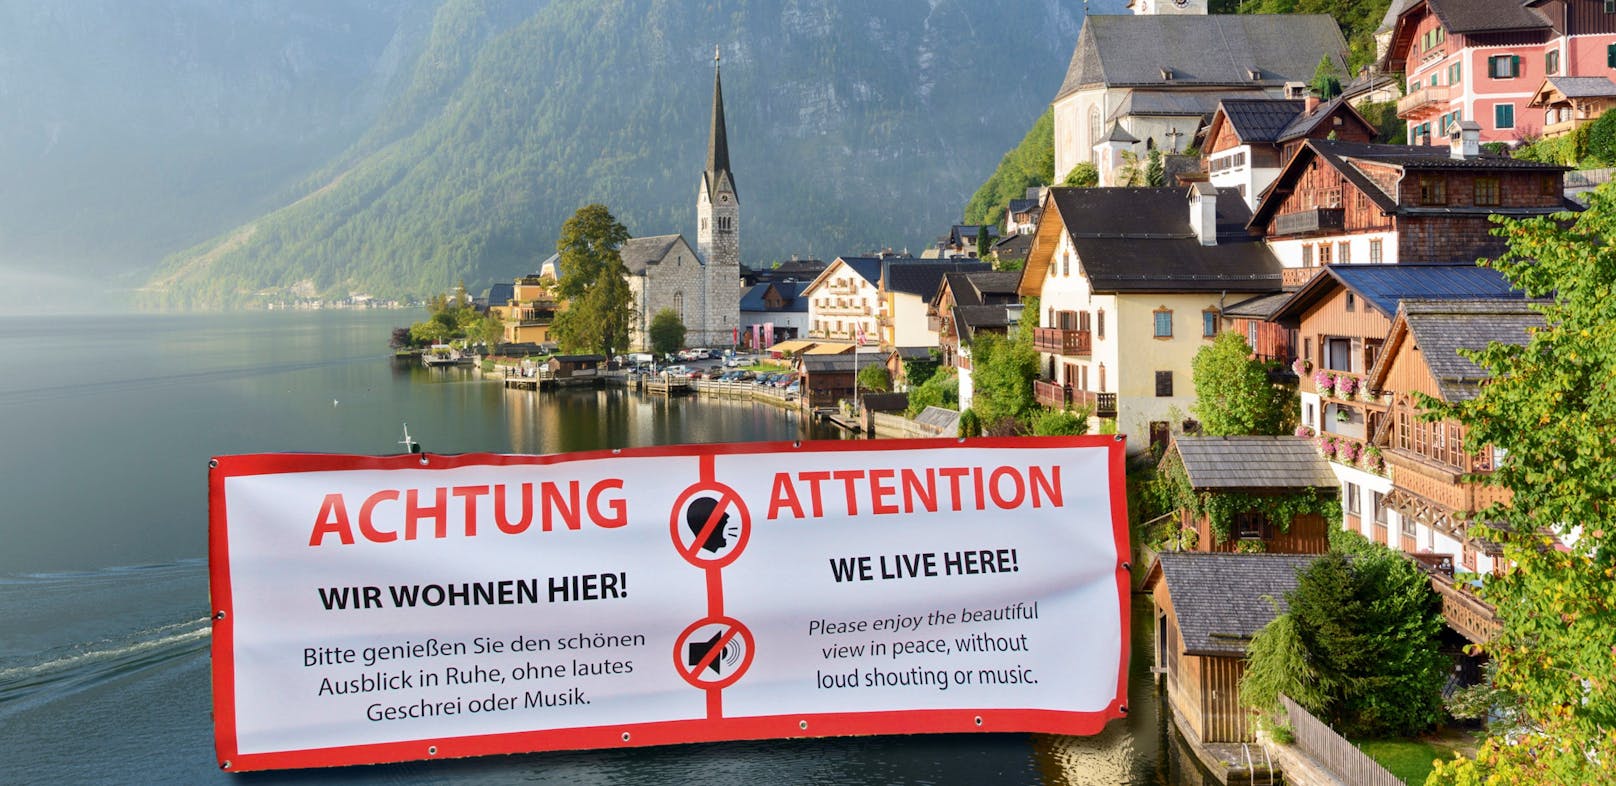 Plakat statt Holzzaun: Ein Transparent soll jetzt für Ruhe in dem beliebten Tourismus-Ort sorgen.